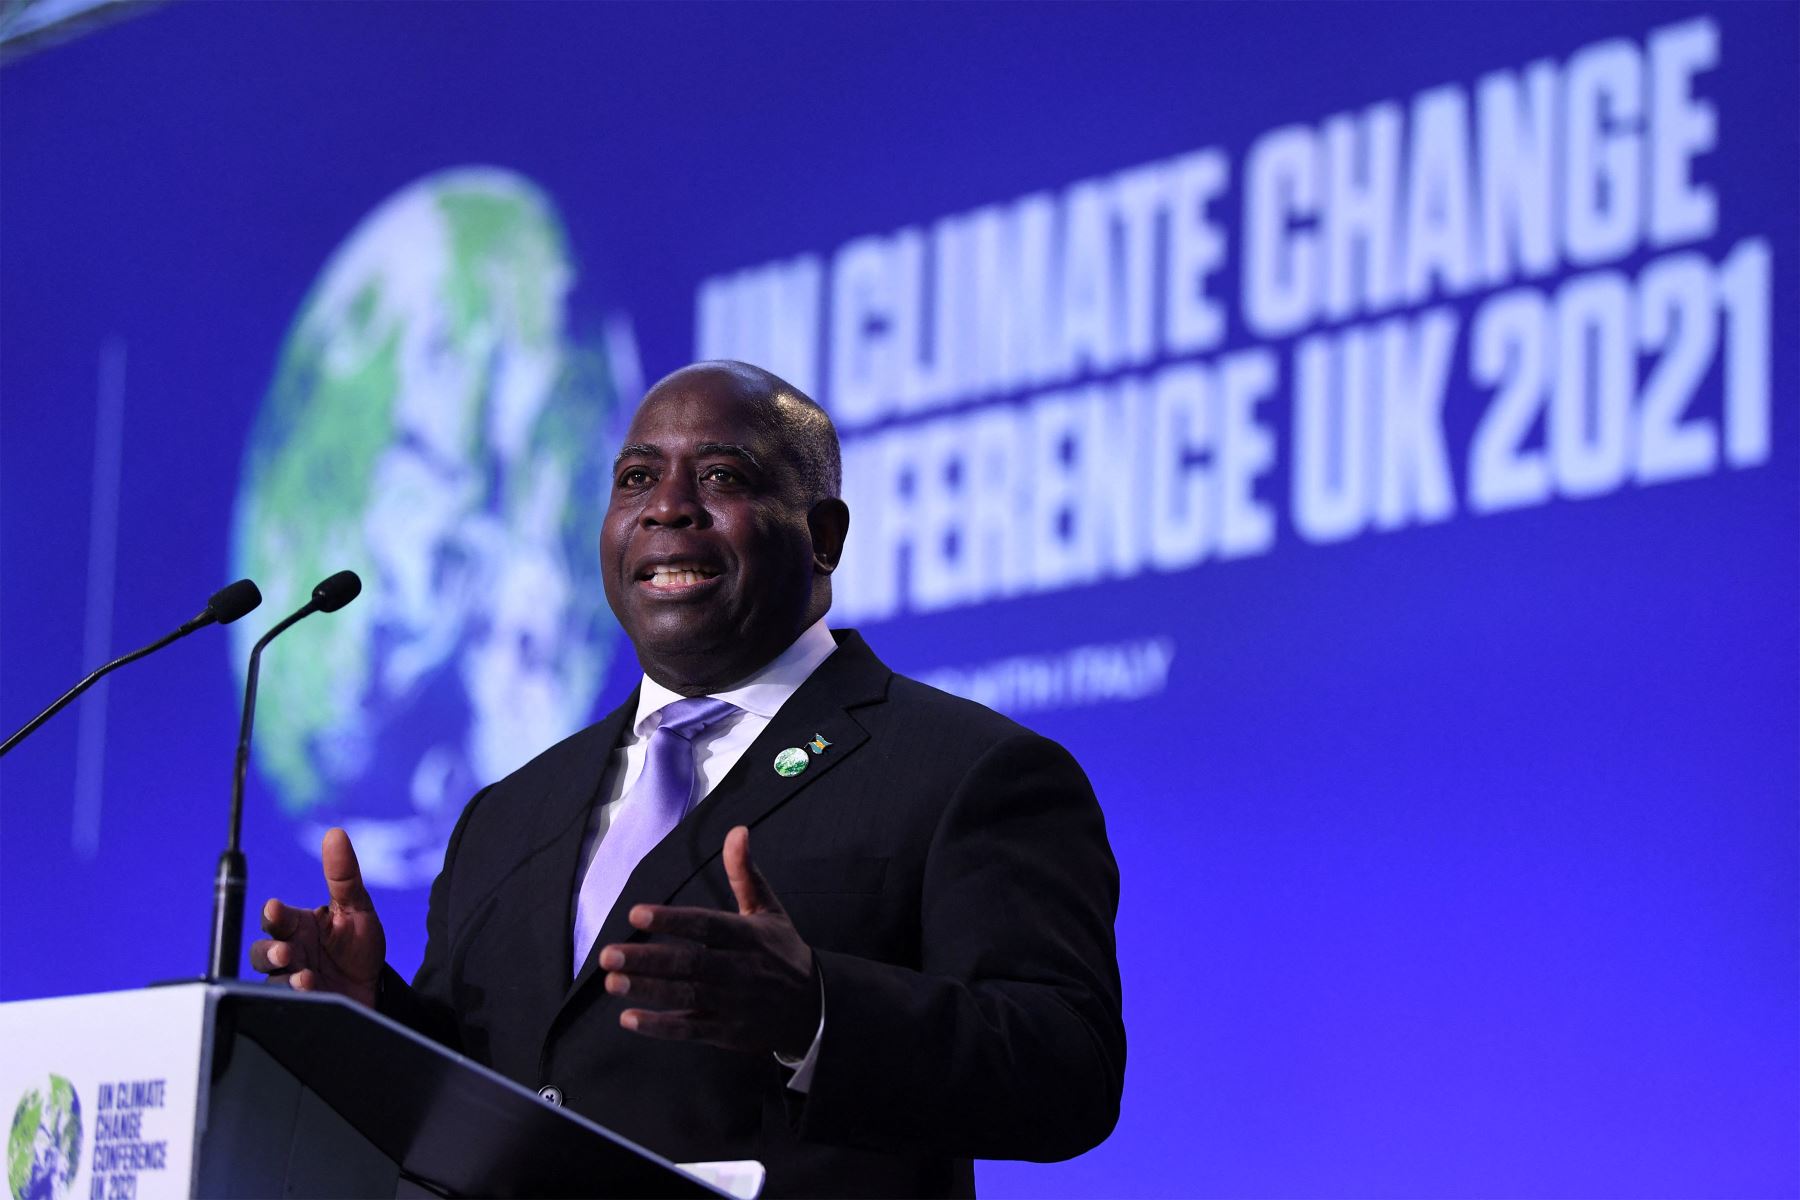 El primer ministro de Bahamas, Philip Edward Davis, hace una declaración nacional en el segundo día de la Cumbre del Clima de la ONU COP26 en Glasgow.
Foto: AFP